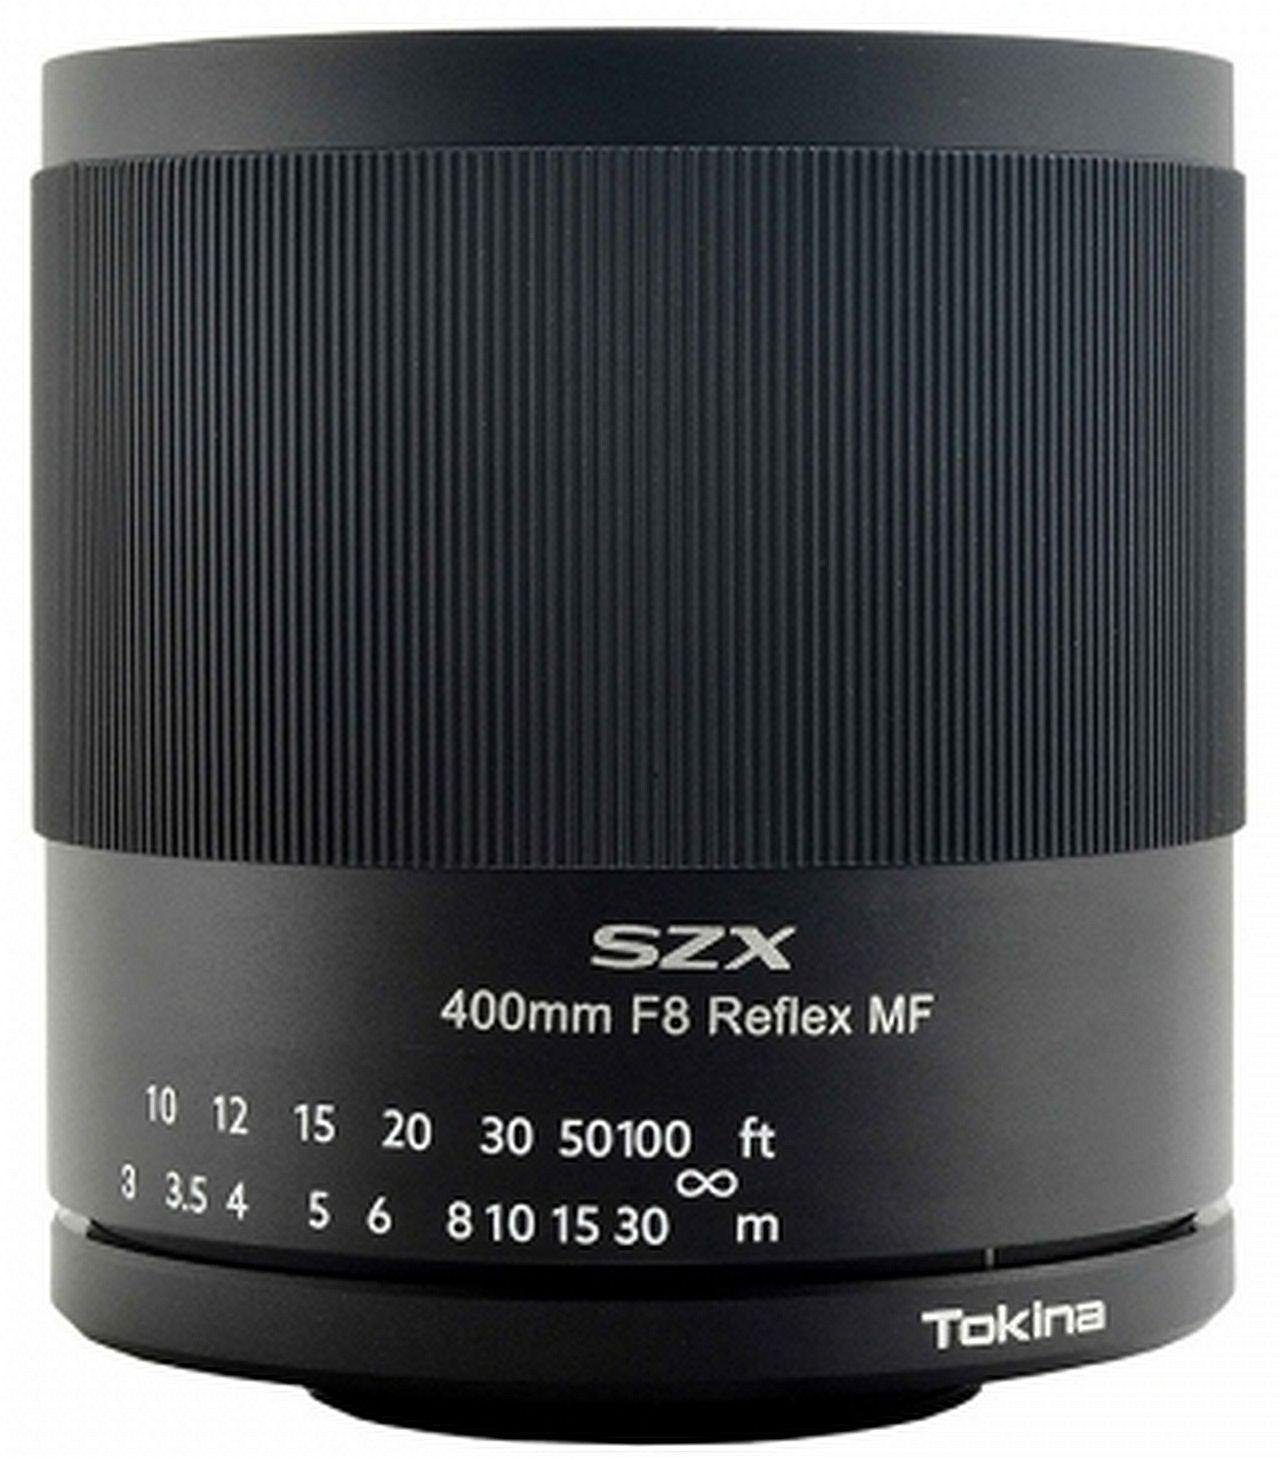 Tokina SZX 400mm F8 Reex MF Fuji X Objektiv | Objektive